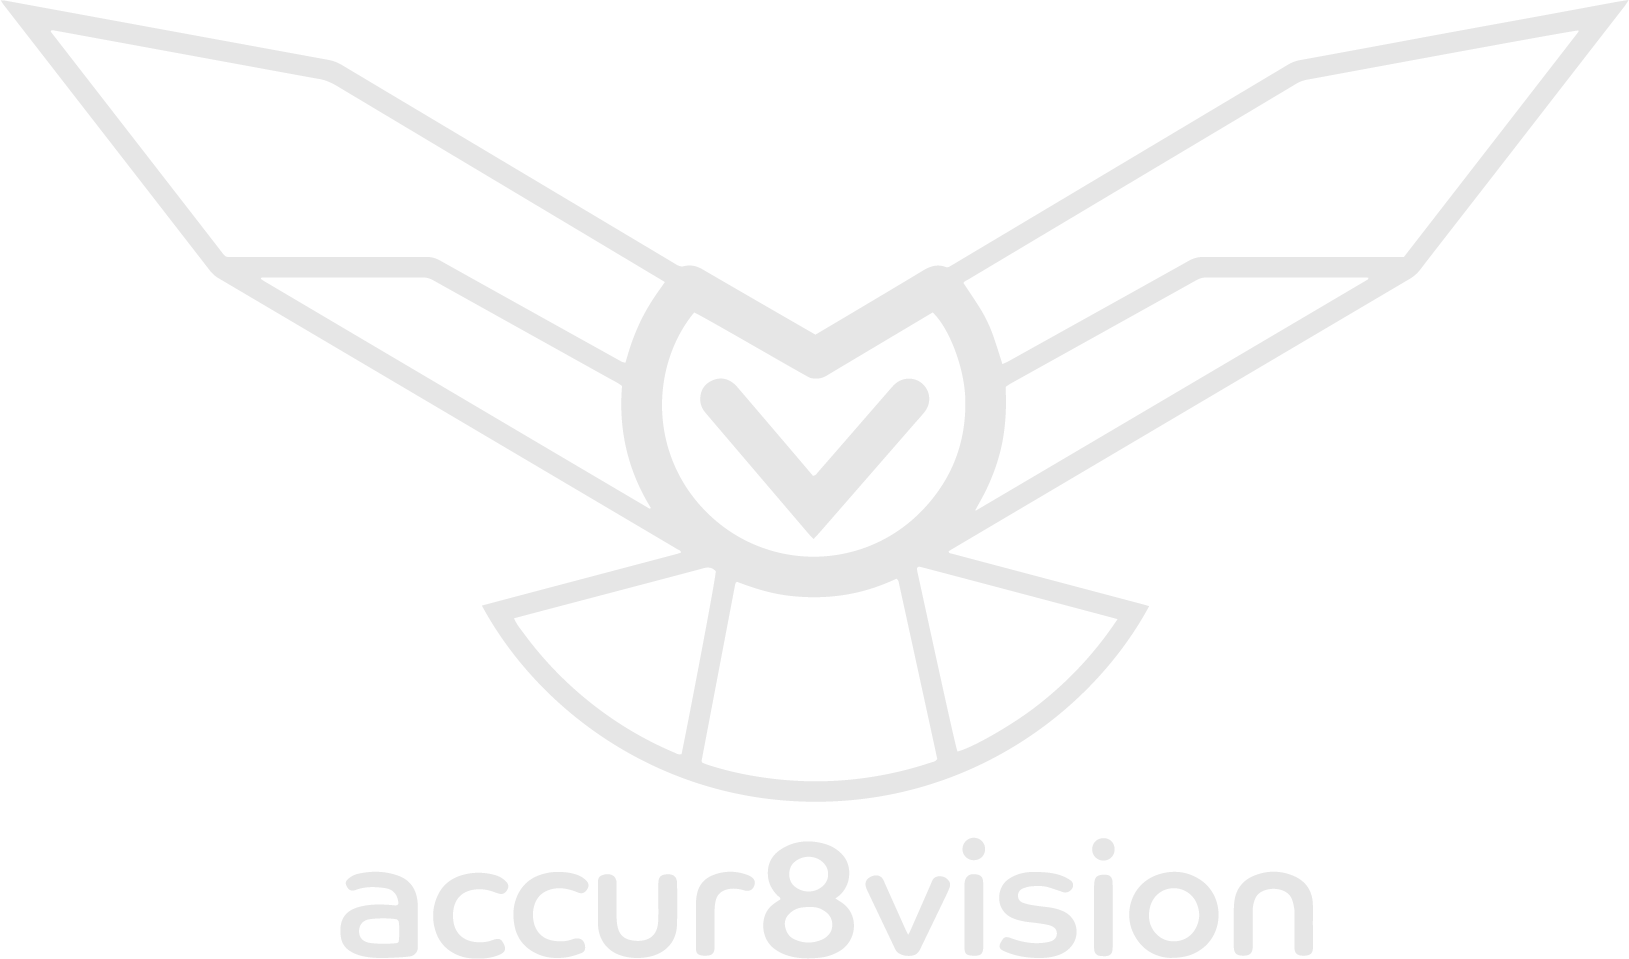 Accur8vision Logo in Graustufen